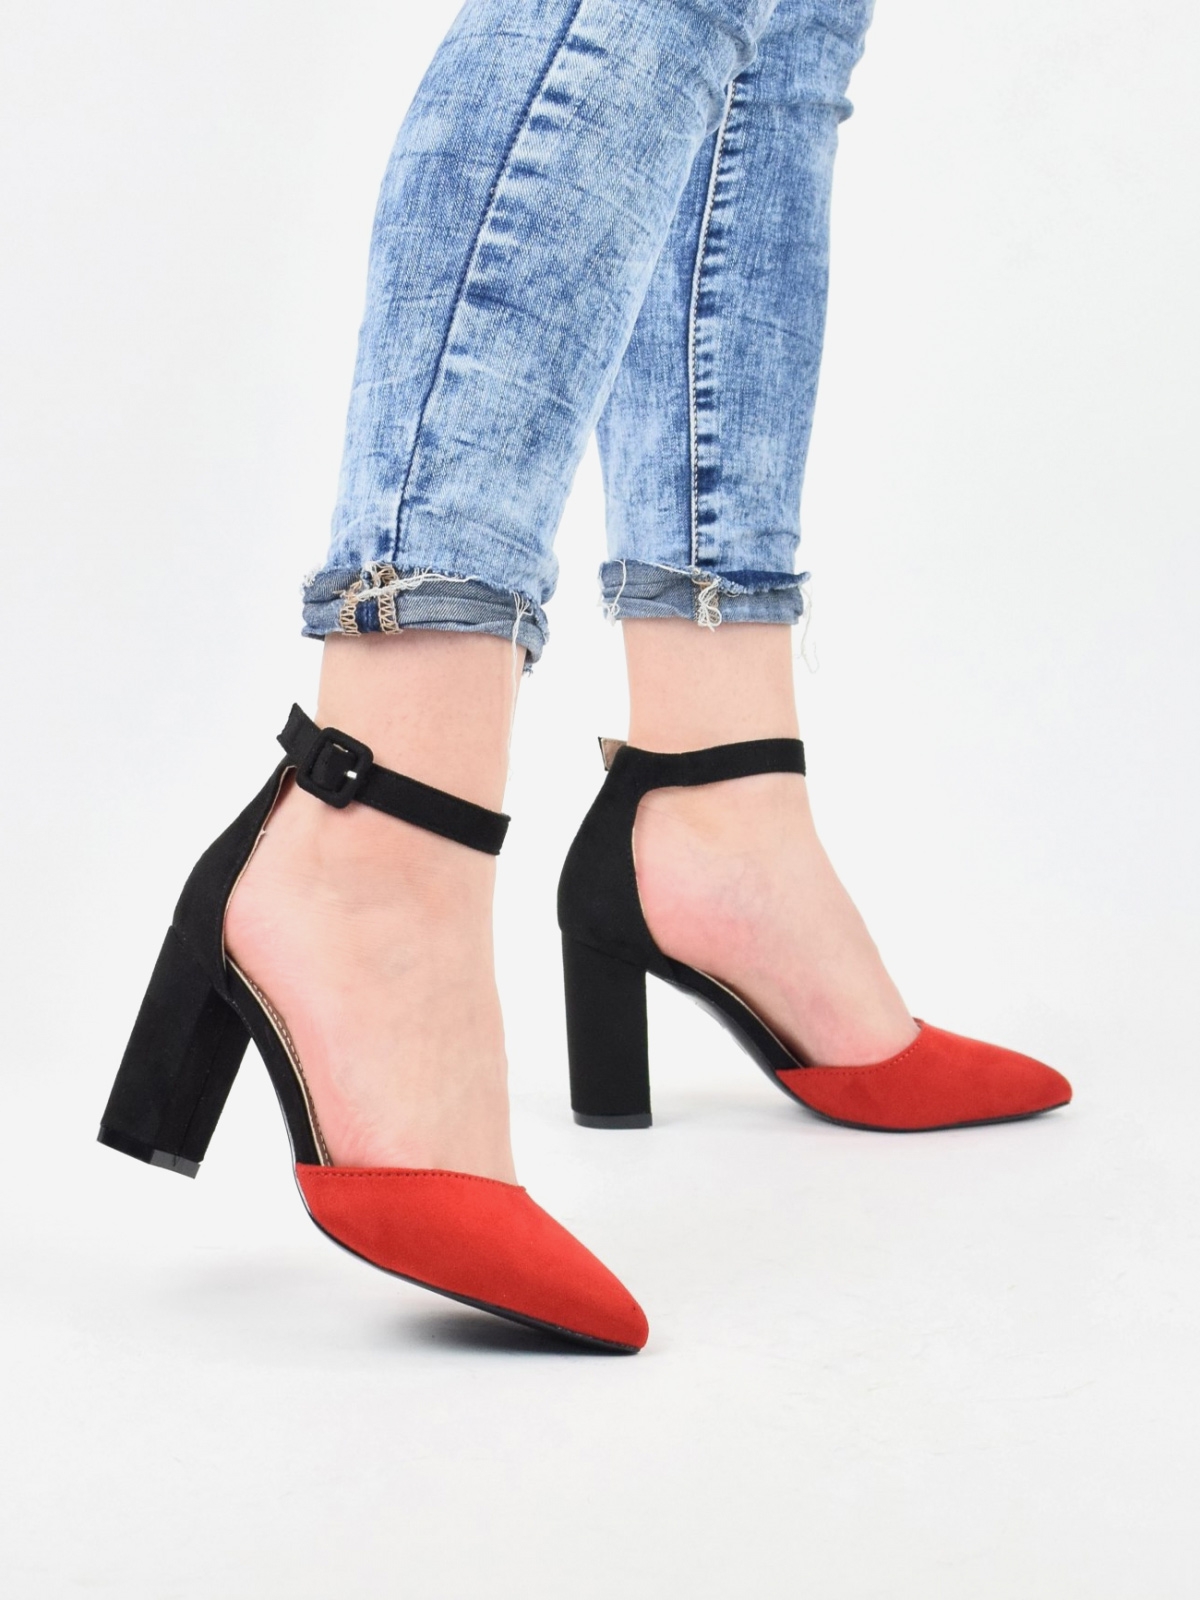 Ajustable shoes | removable heels | interchangeable heels – Tanya Heath  Paris